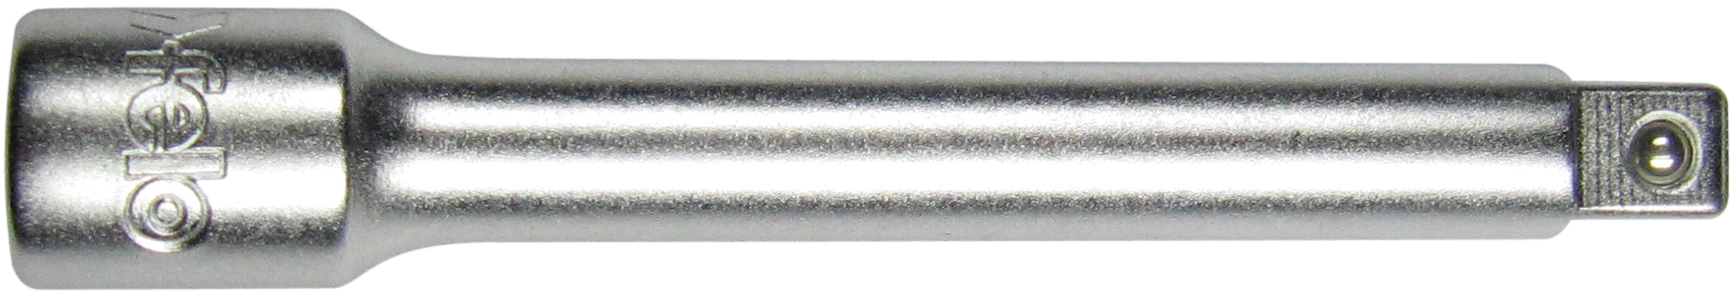 Felo Verlängerung Standard 1|4 Zoll - 75 mm Verlängerung für Vierkant-Ratsche (FL-09707010) Bild-01